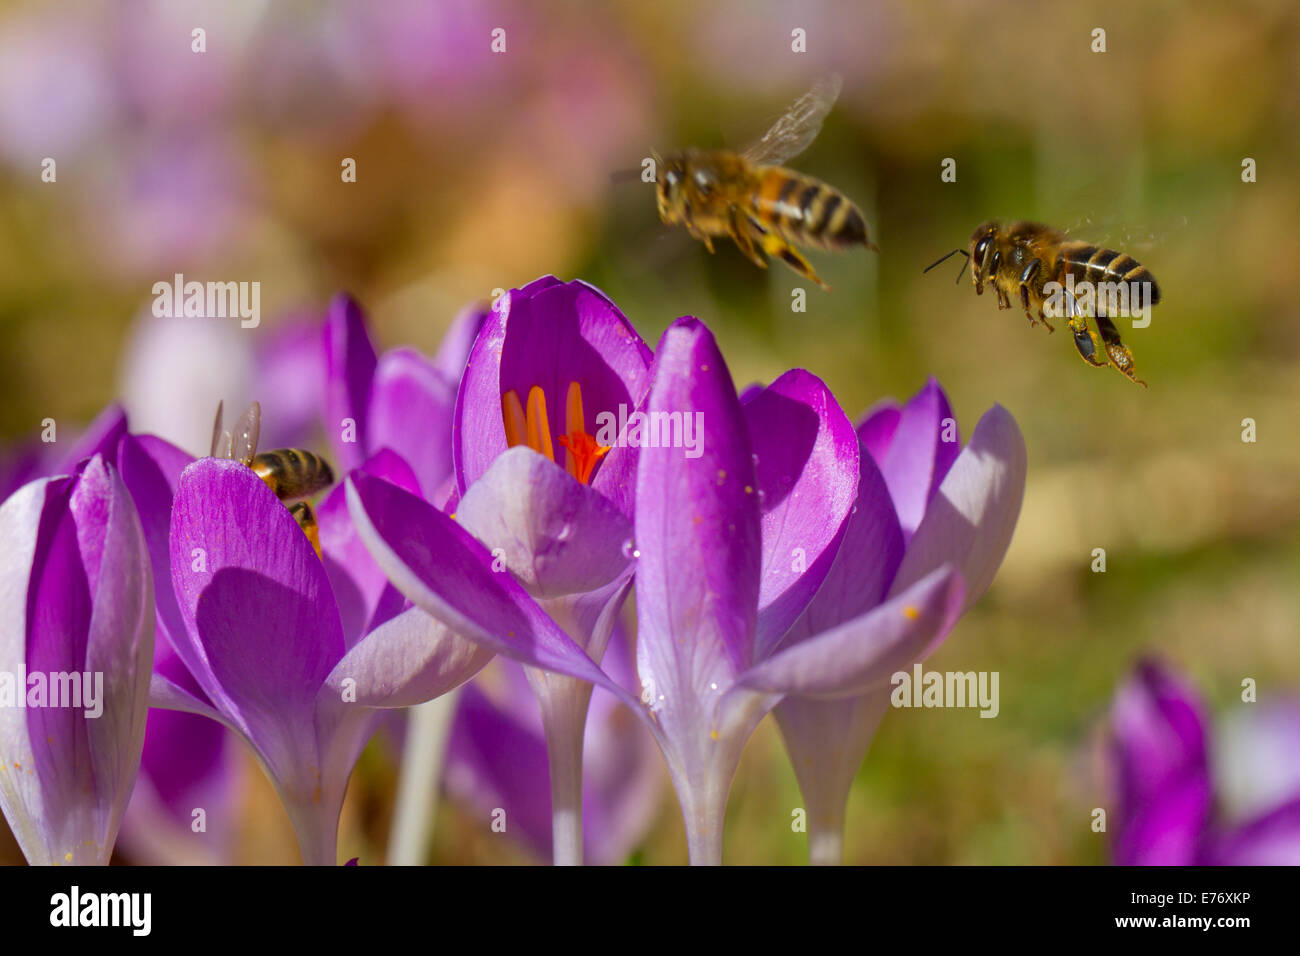 'Abeille à miel (Apis mellifera) les travailleurs se nourrissant de fleurs de crocus (Crocus sp.) dans un jardin. Powys, Pays de Galles. Février. Banque D'Images